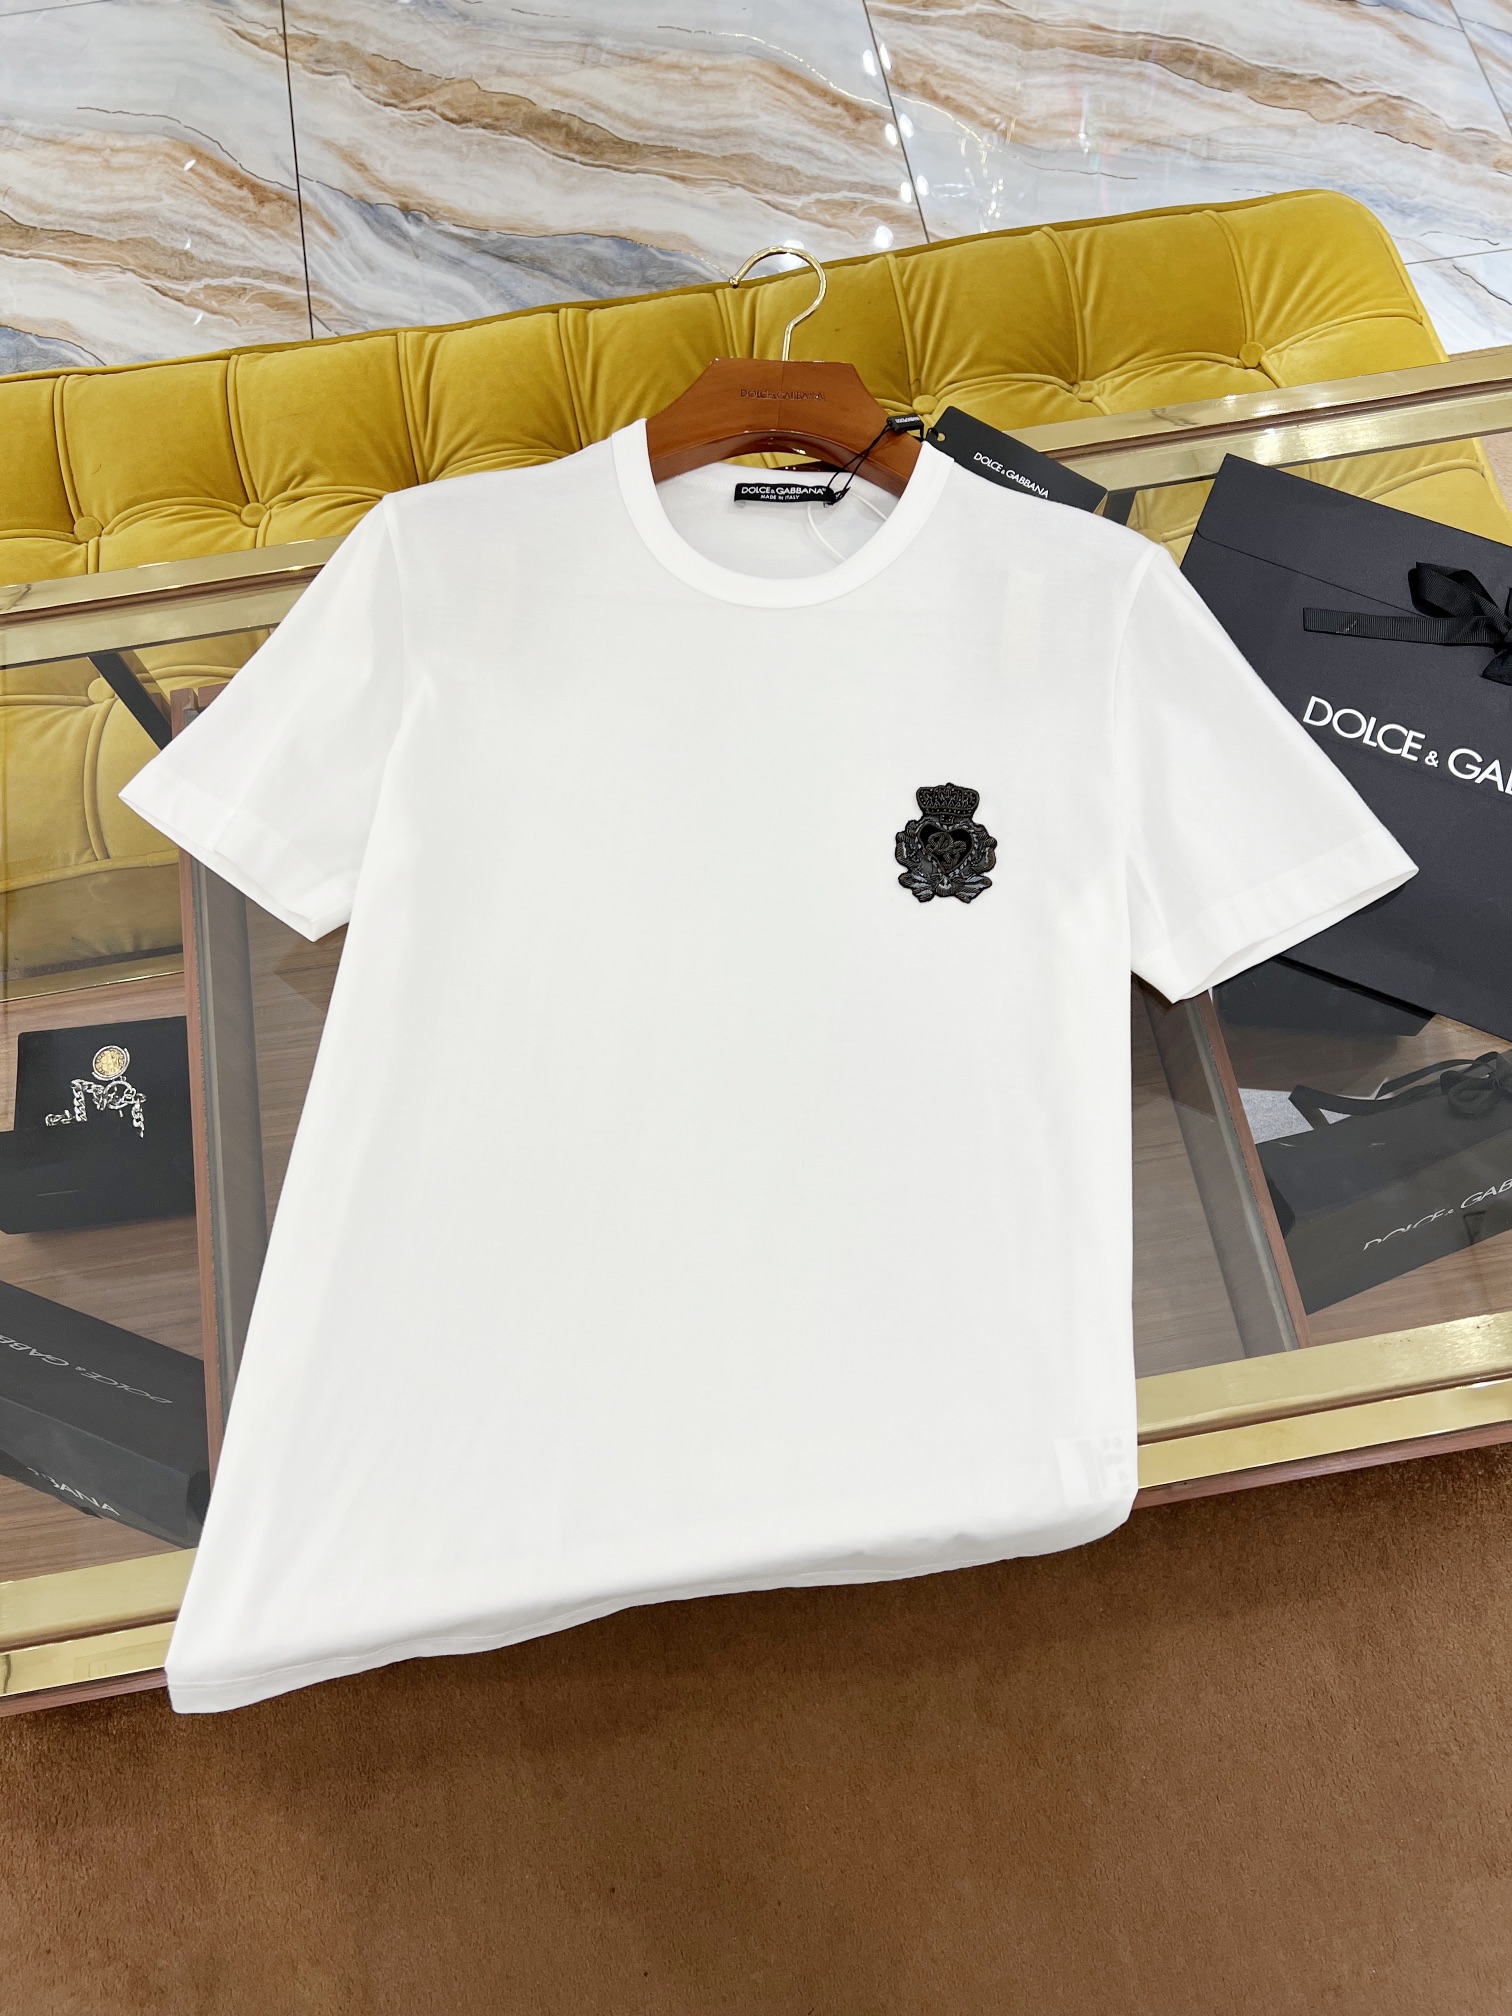 SS新款T恤顶级DG皇冠印度丝独家新面料升级经典爆款正常版型黑/白码数44-54